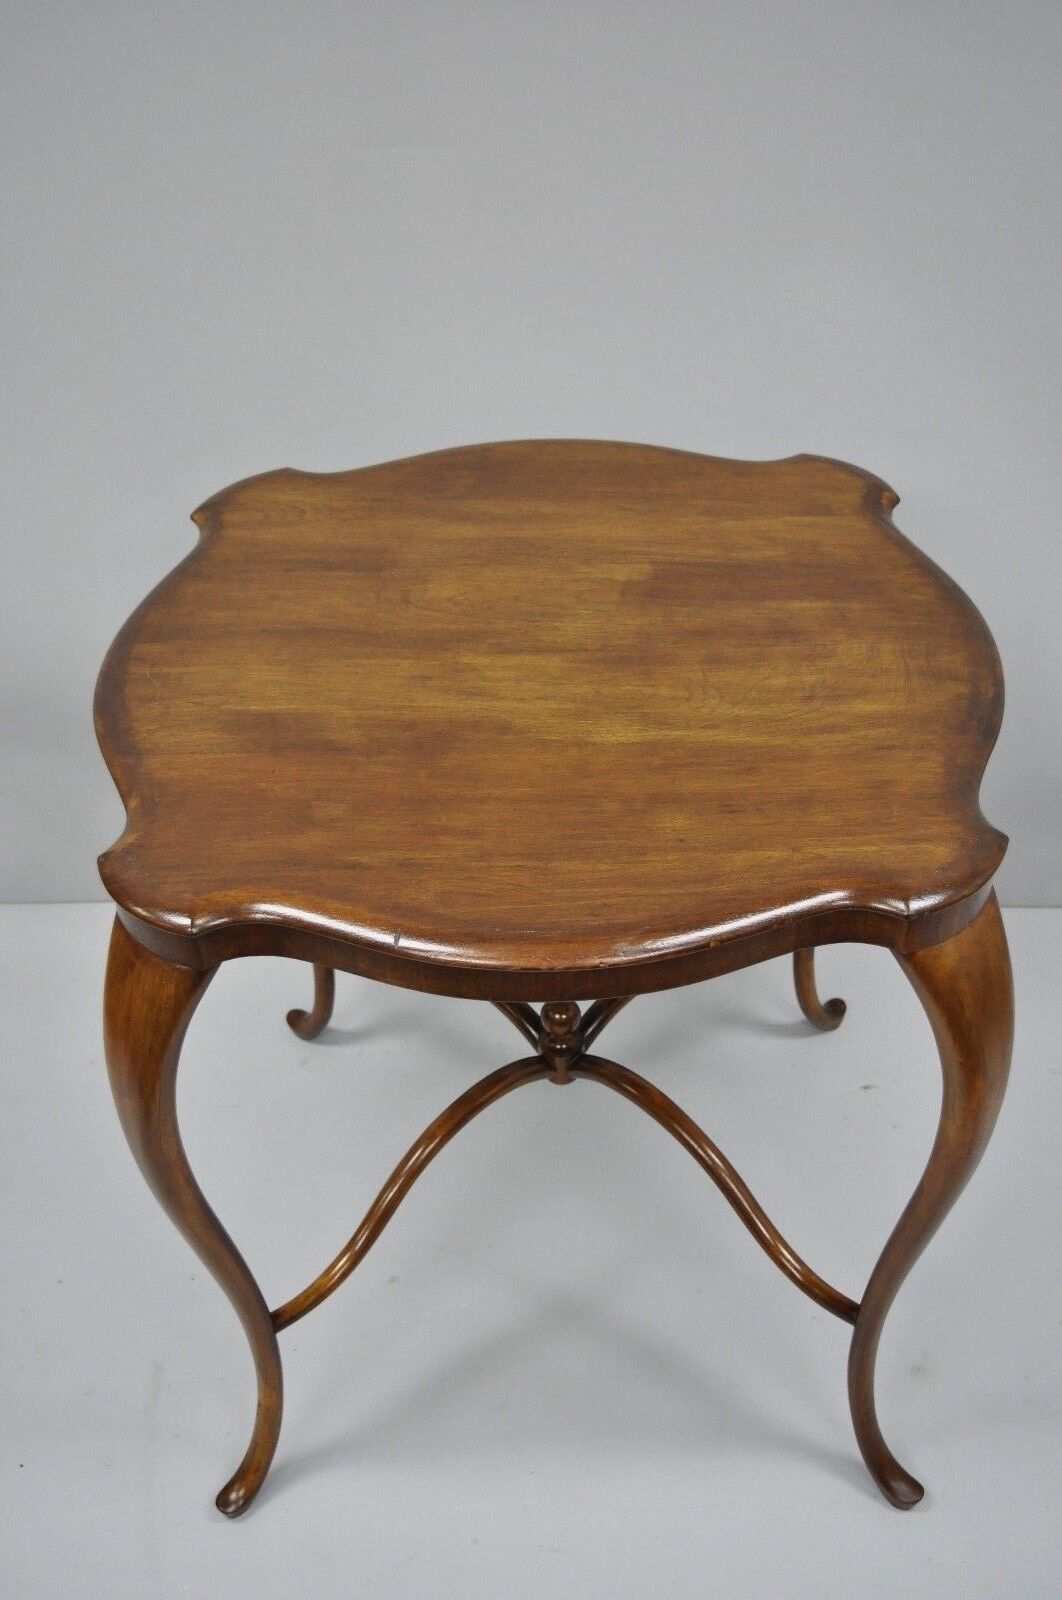 Antique Art Nouveau Victorian Mahogany Accent Fern Table Turtle Top Cabriole Leg